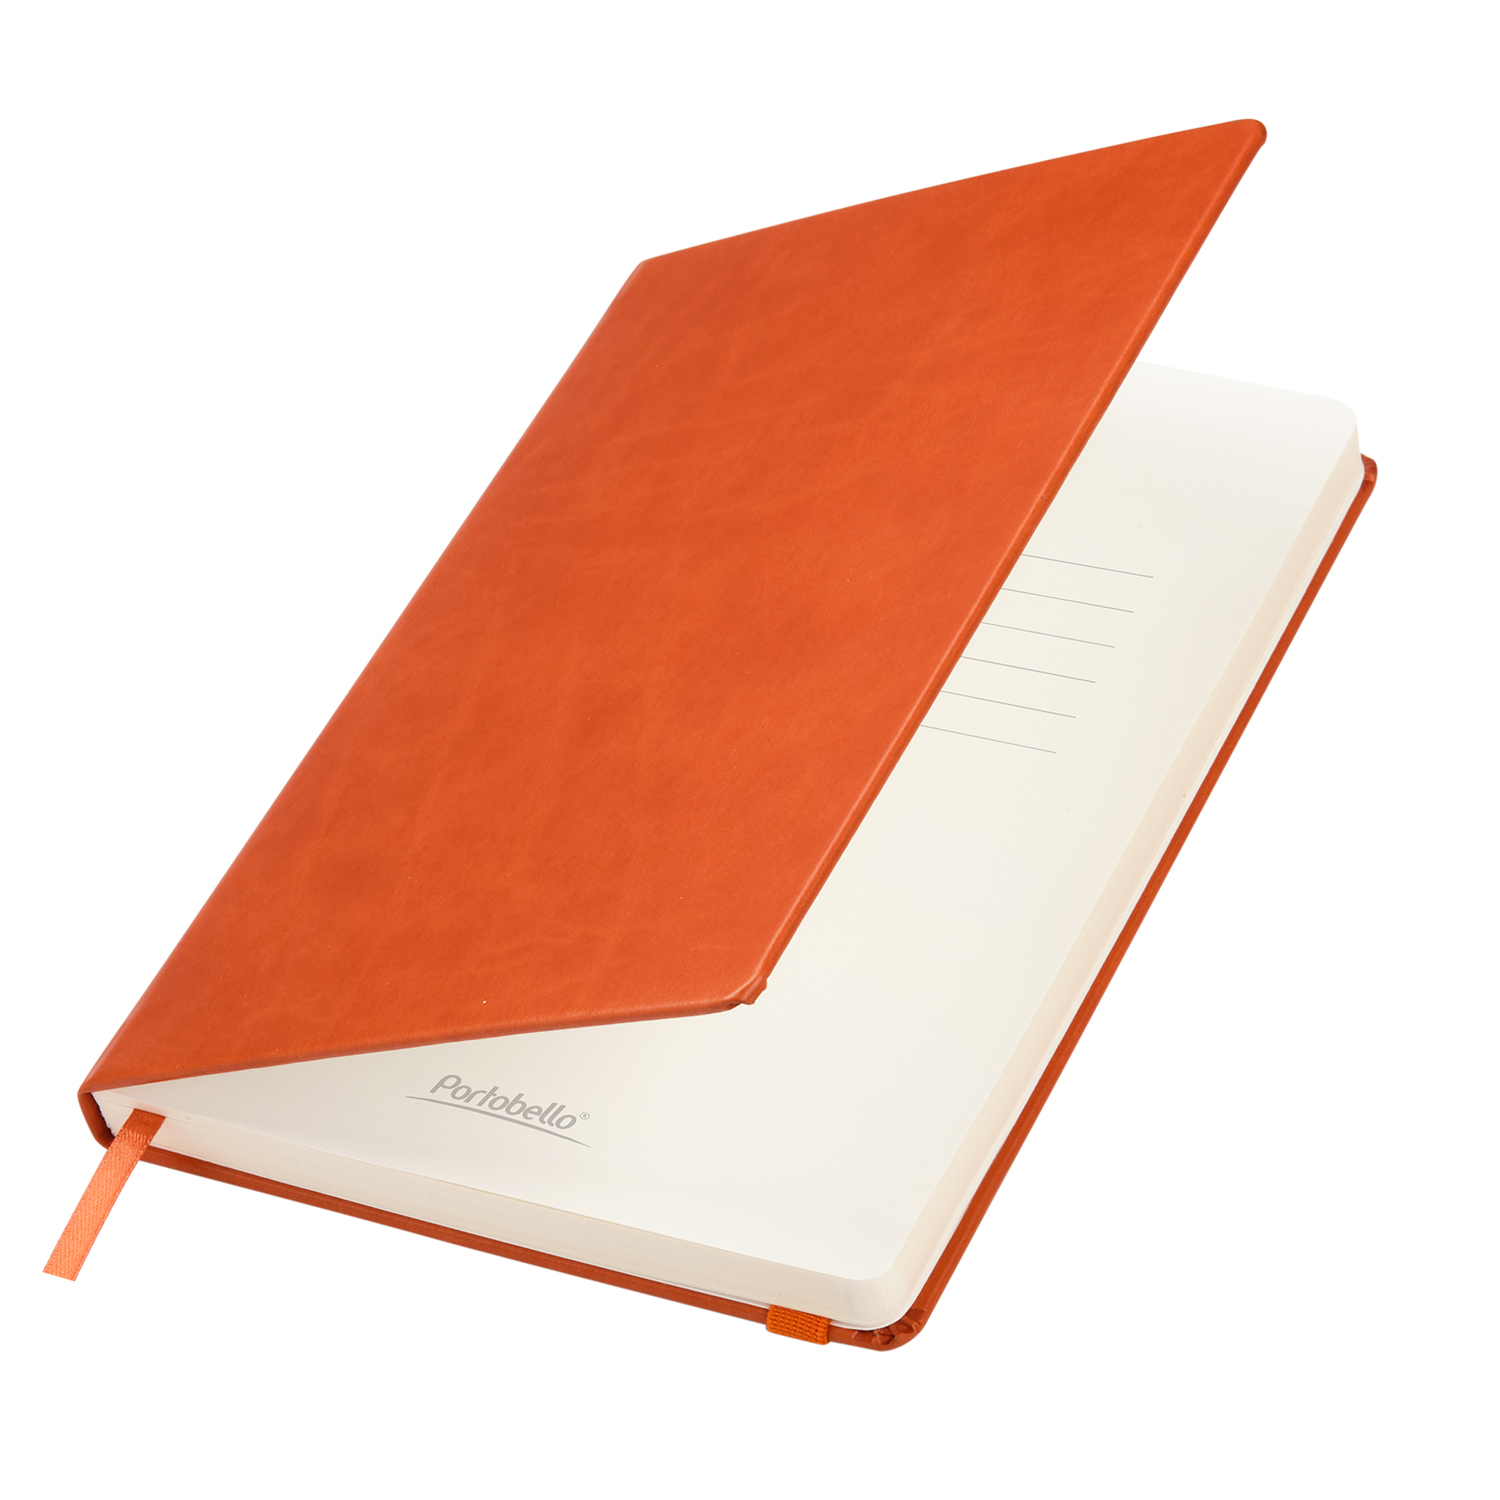 Ежедневник Portland BtoBook недатированный, оранжевый (без упаковки, без стикера)